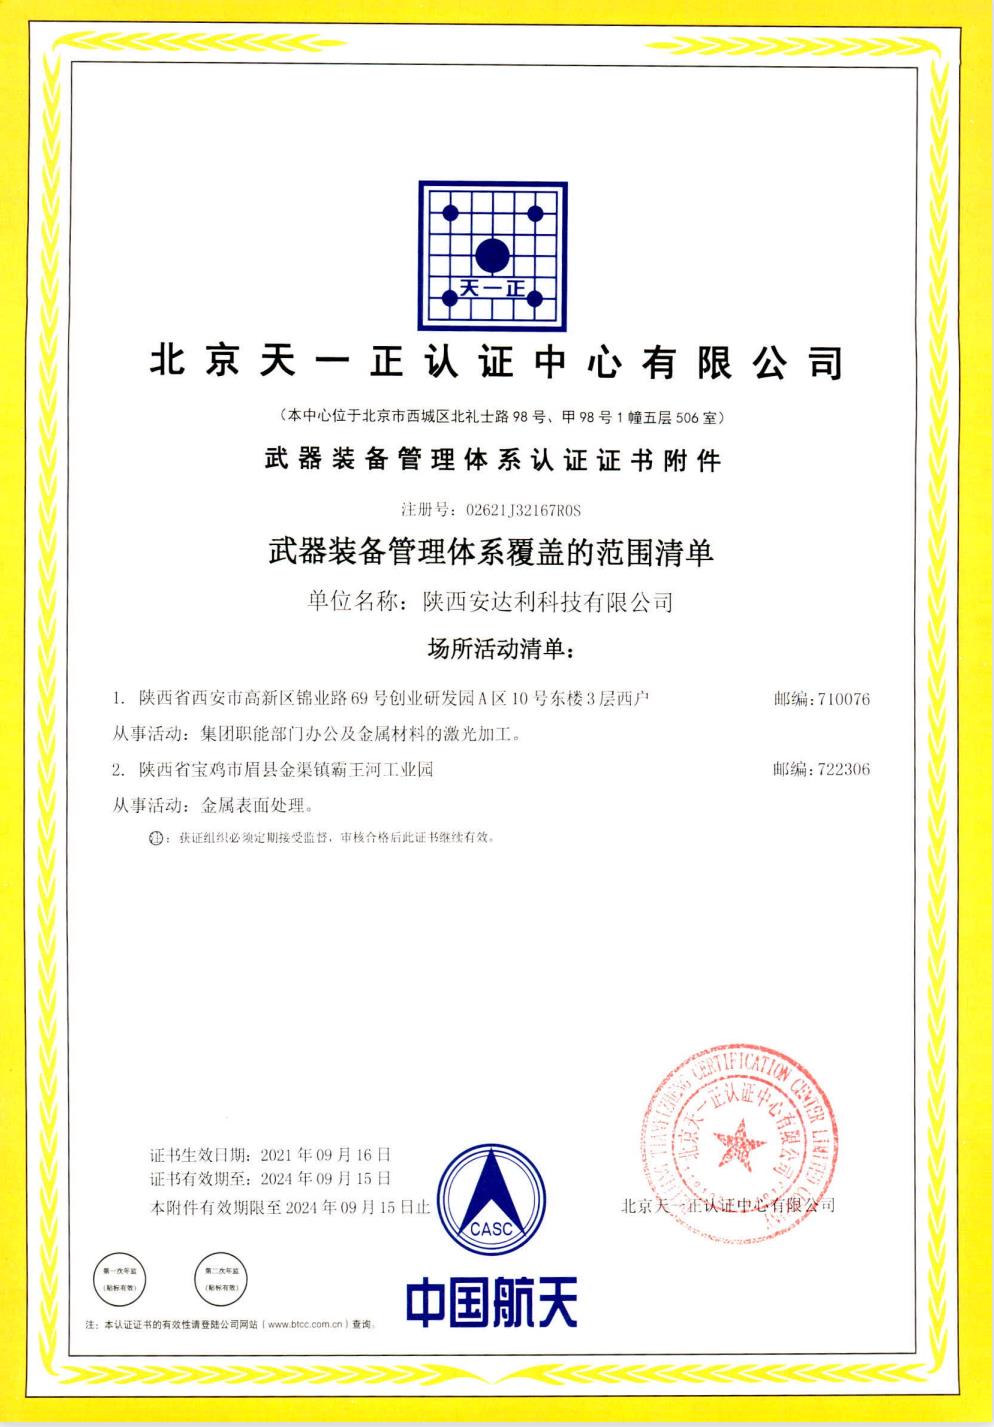 武器装备质量管理体系认证证书附件